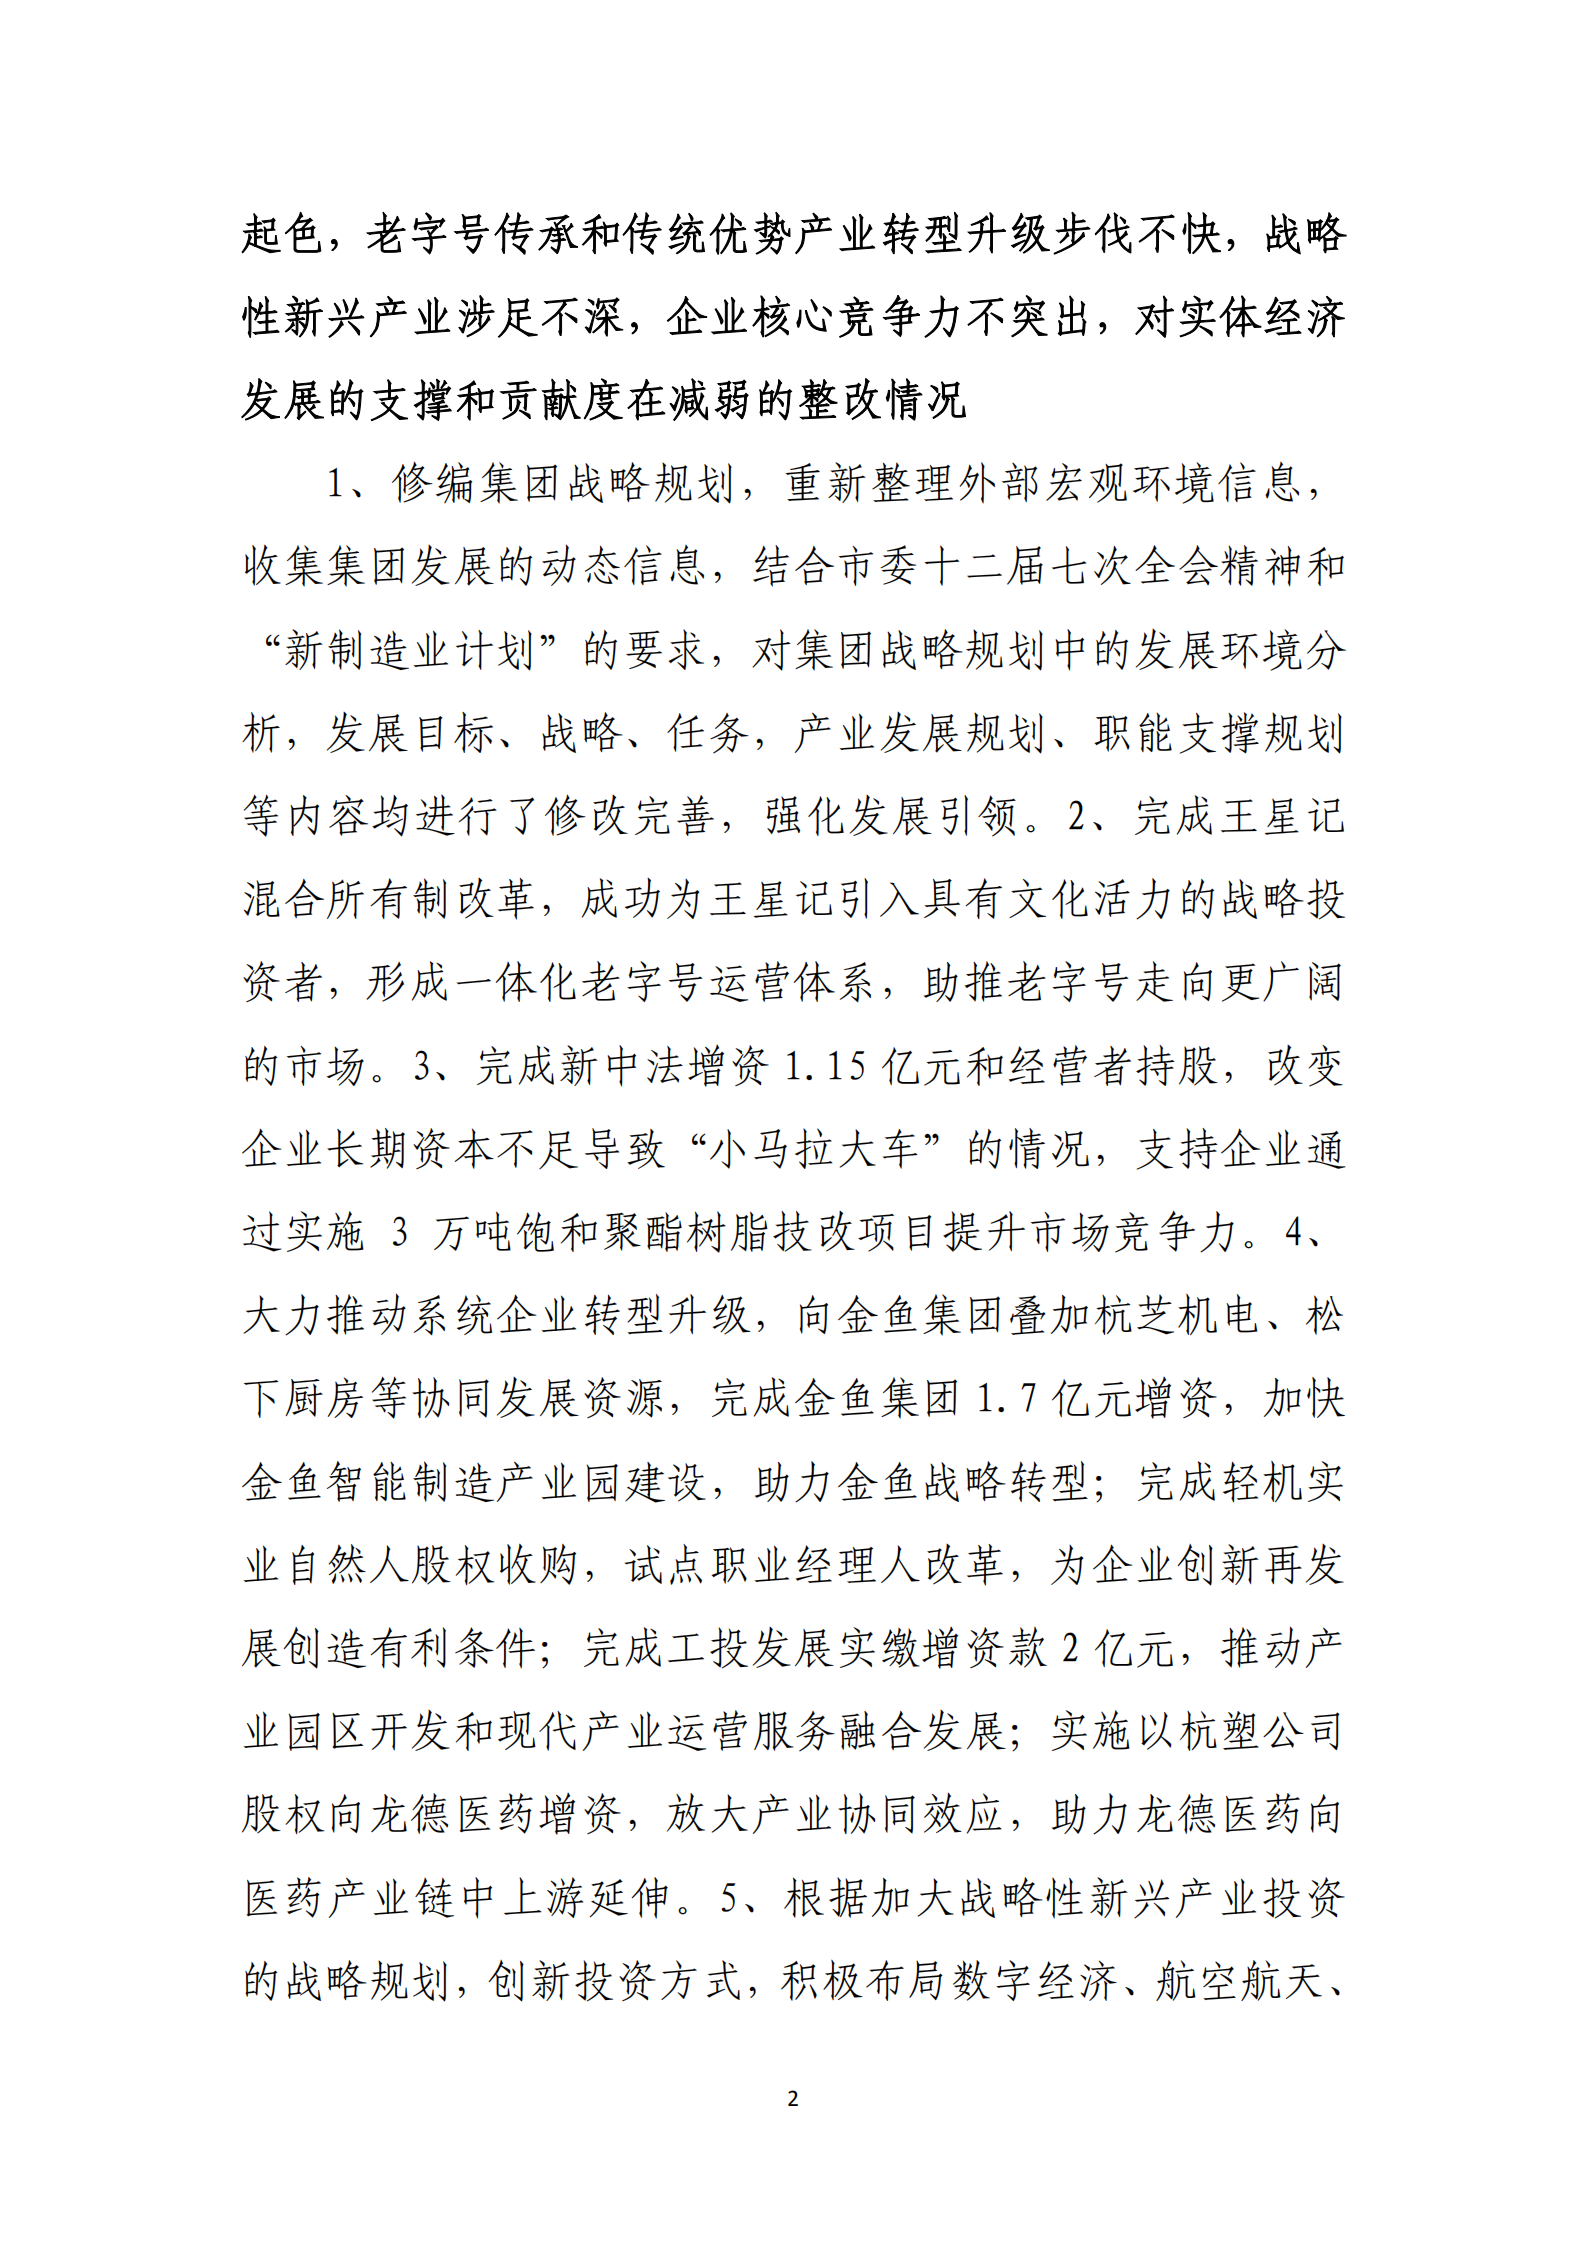 杭实集团党委关于巡察整改情况的通报_01.png